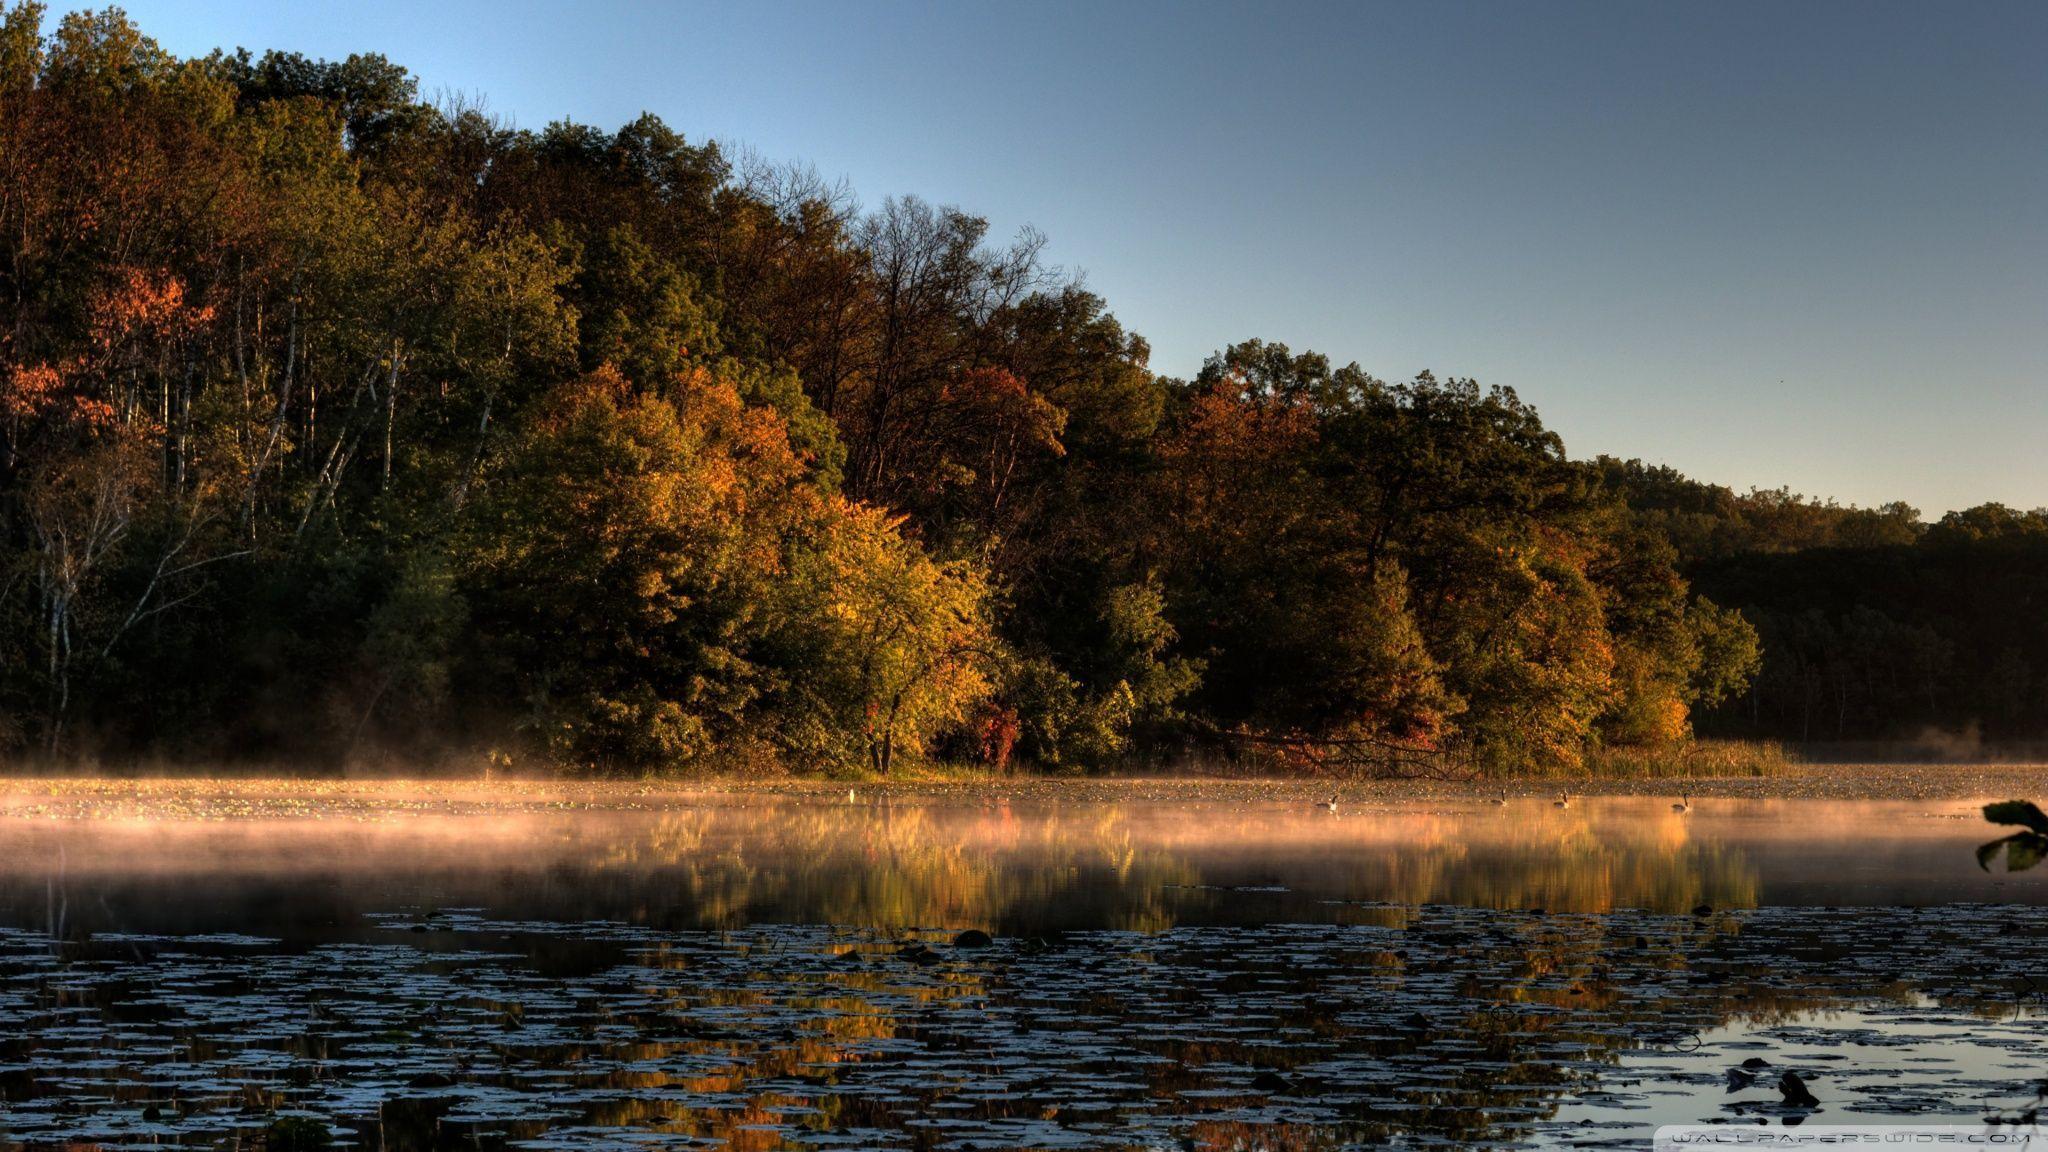 A Tinge of Fall, Jensen Lake, Lebanon Hills Park, Eagan, Minnesota